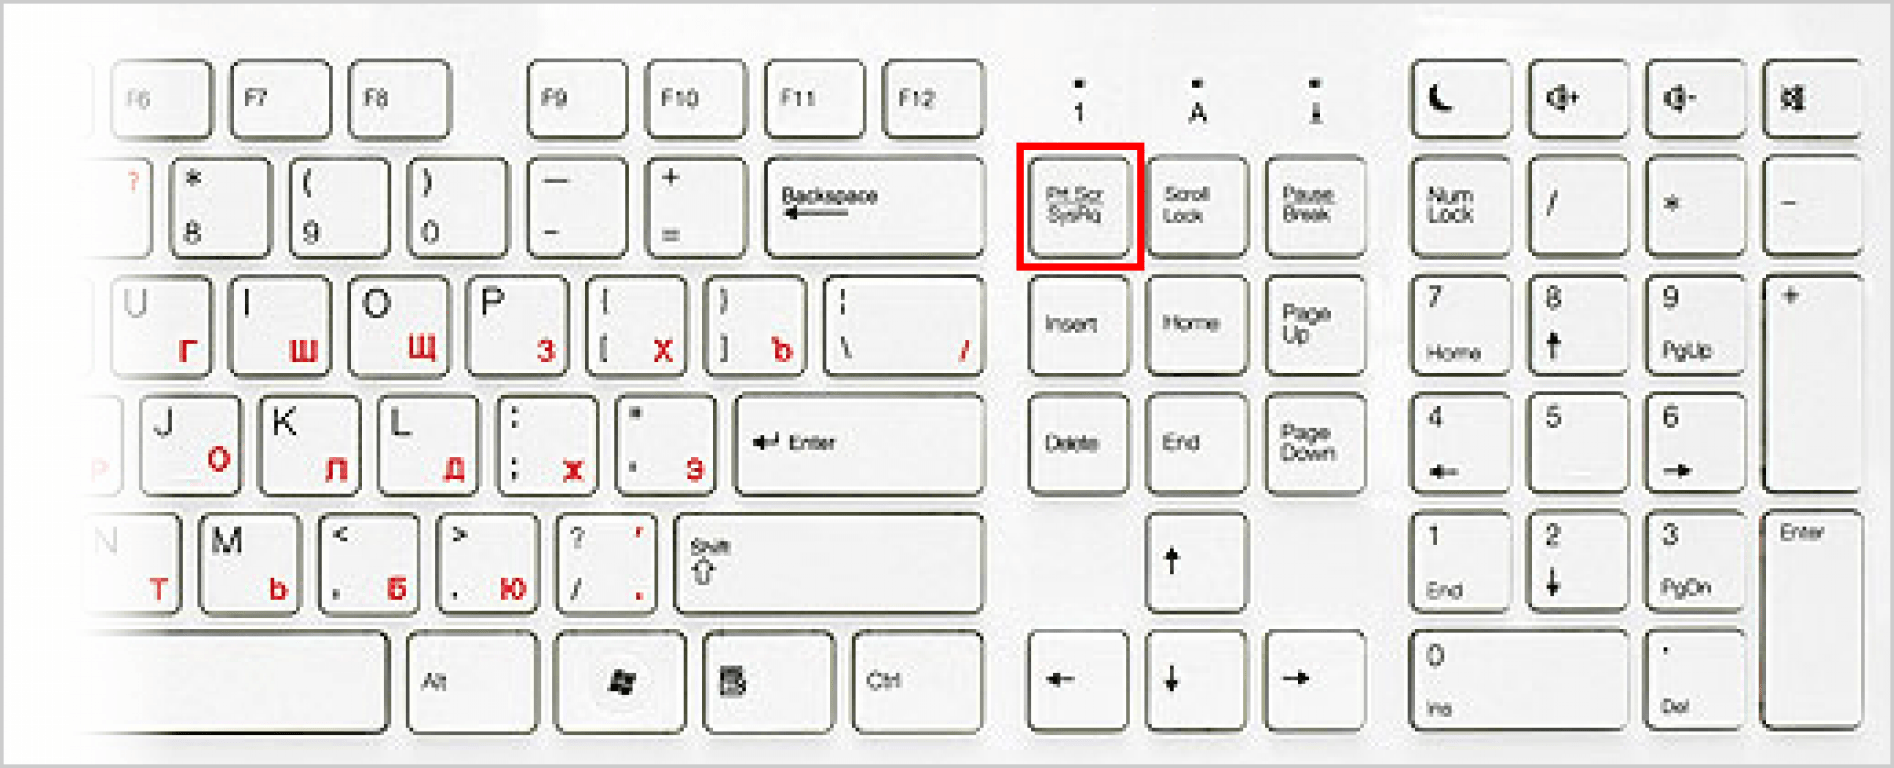 Как сделать скриншот картинки на компьютере с помощью клавиатуры